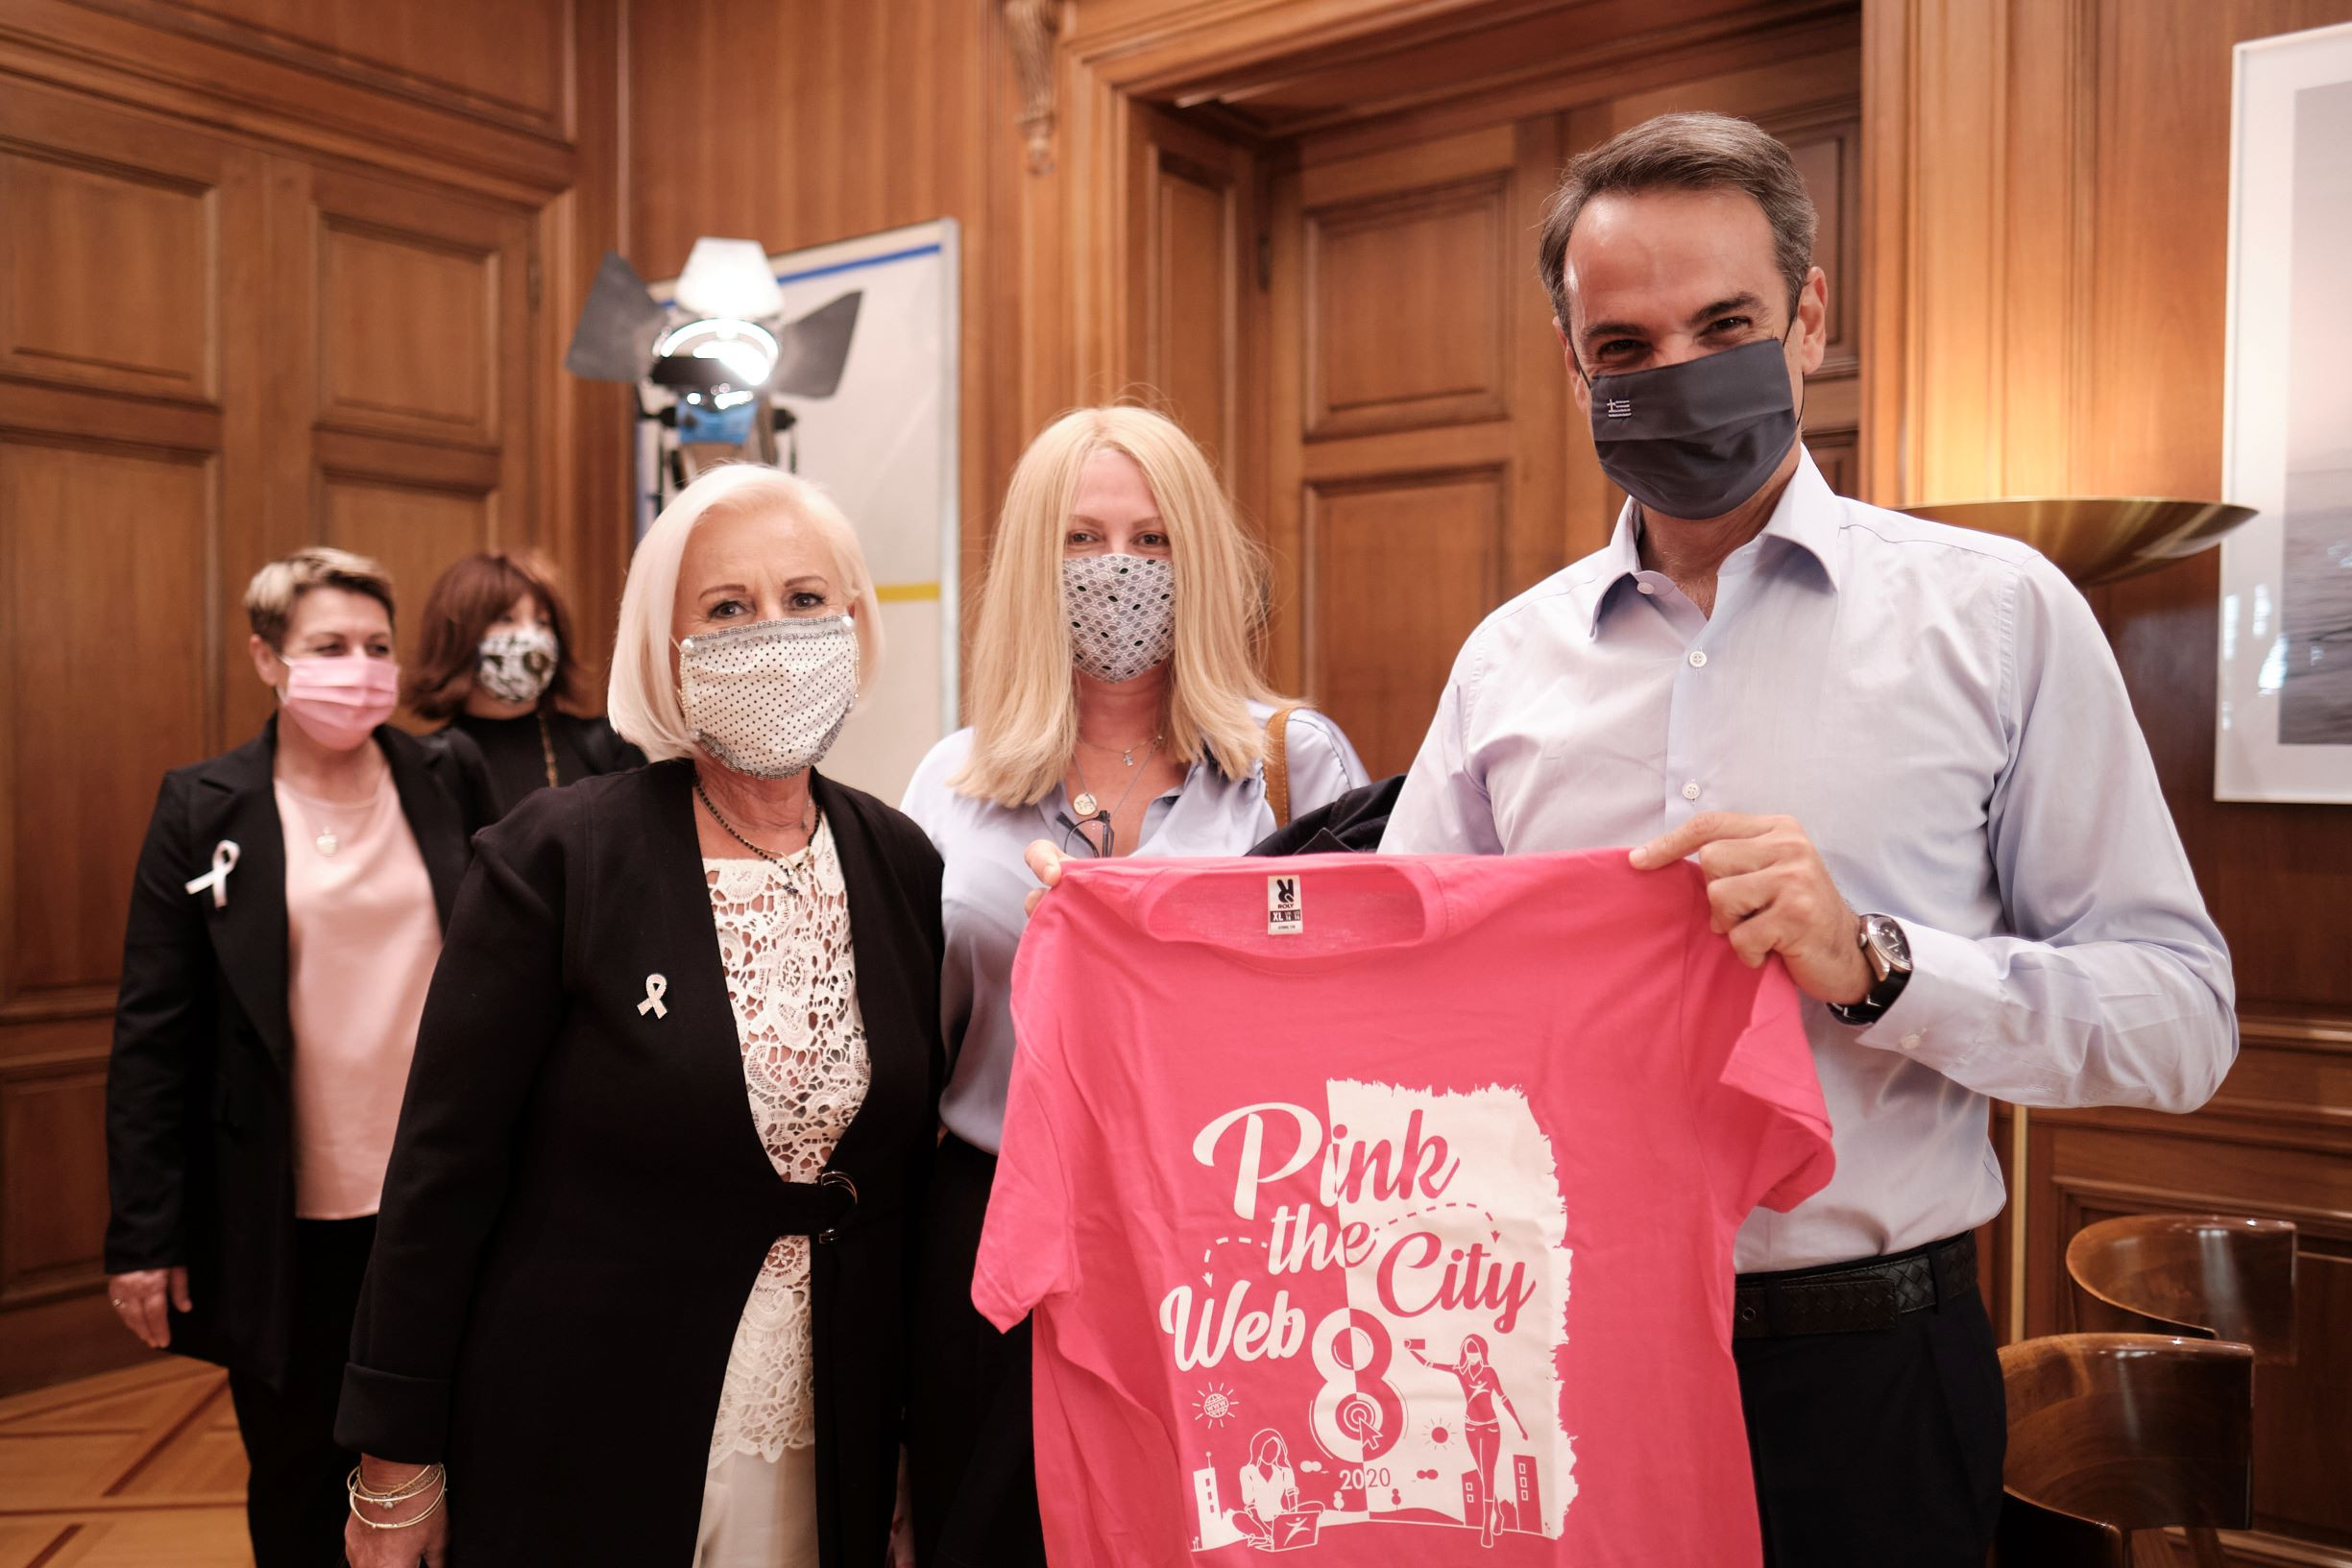 Ο Μητσοτάκης ανακοίνωσε δωρεάν πρόγραμμα μαστογραφίας που νομοθέτησε ο ΣΥΡΙΖΑ και με «κόψιμο» δικαιούχων